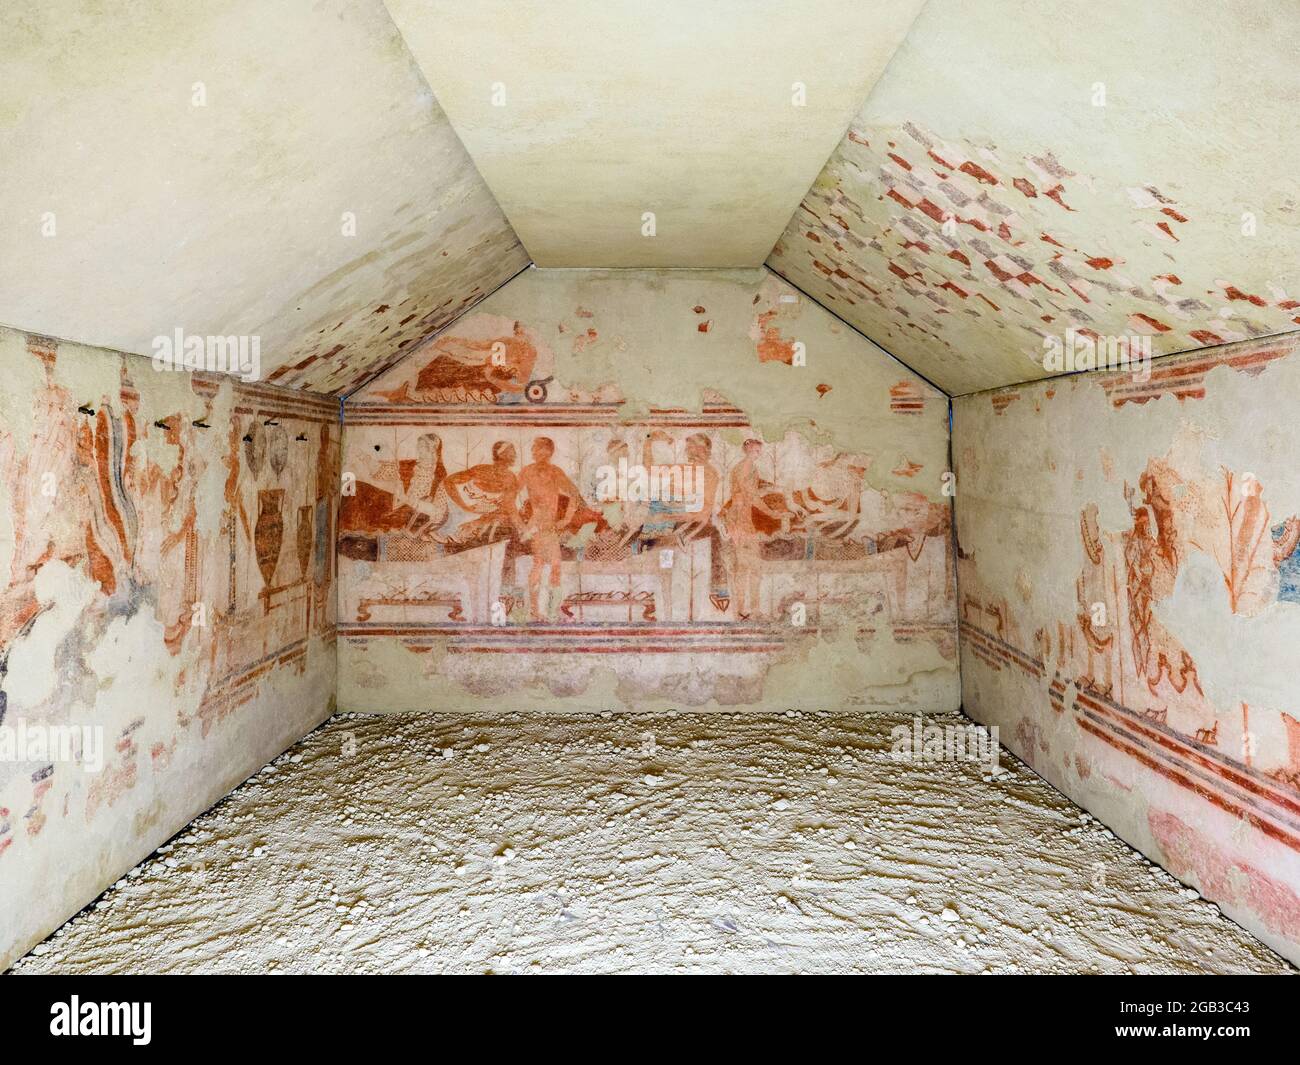 Murs peints en fresque à Tomba della nave (tombeau de bateau) 5e siècle avant JC - Musée archéologique national de Tarquinia, Italie Banque D'Images